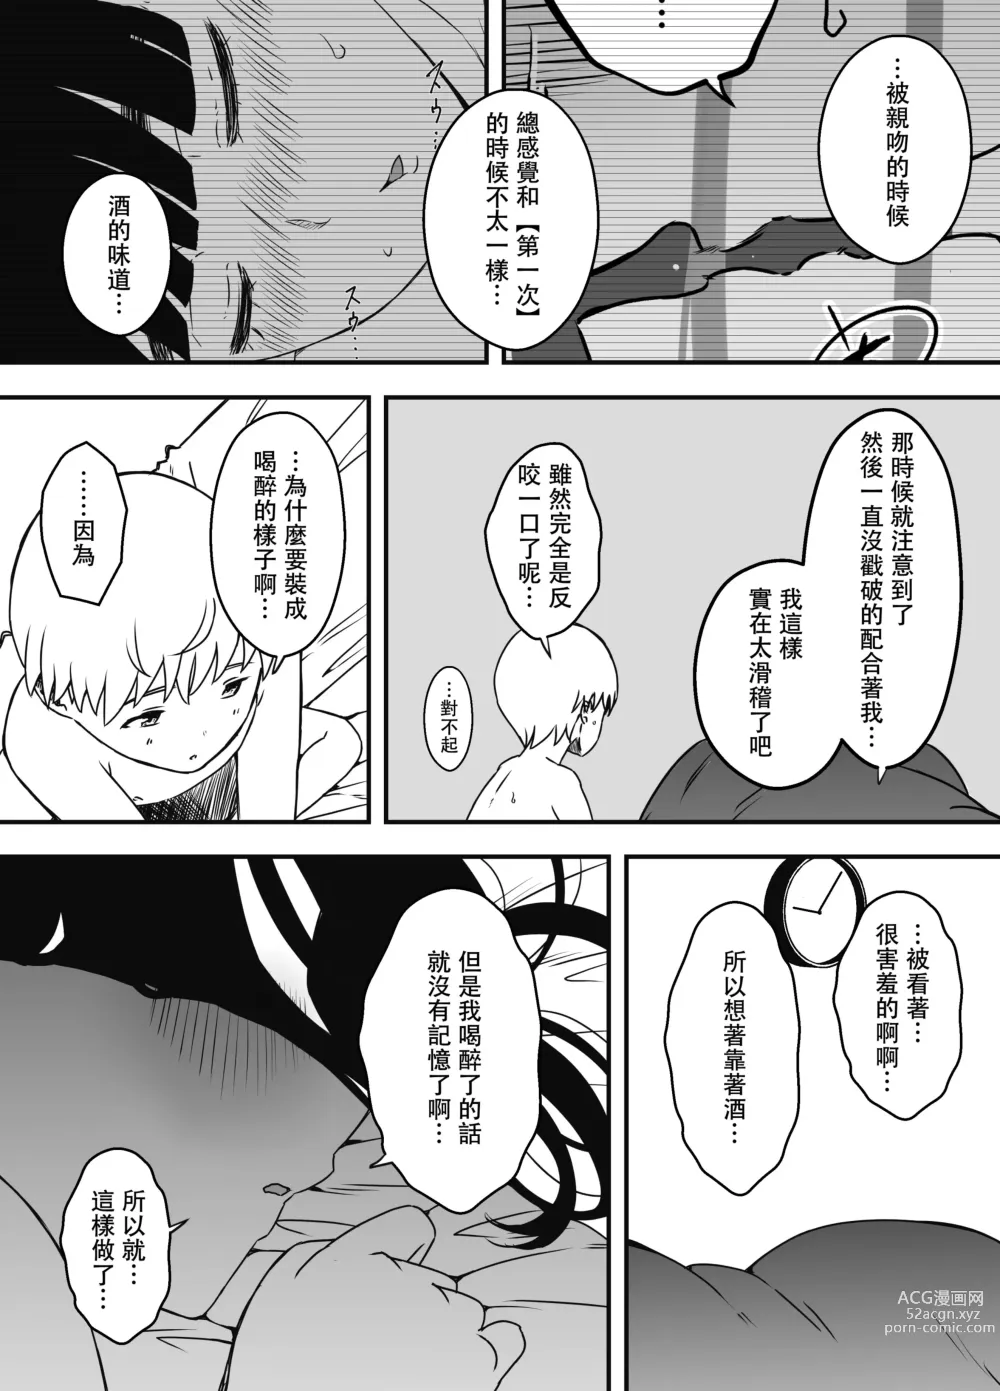 Page 32 of doujinshi Giri no Ane to no 7-kakan Seikatsu - 5